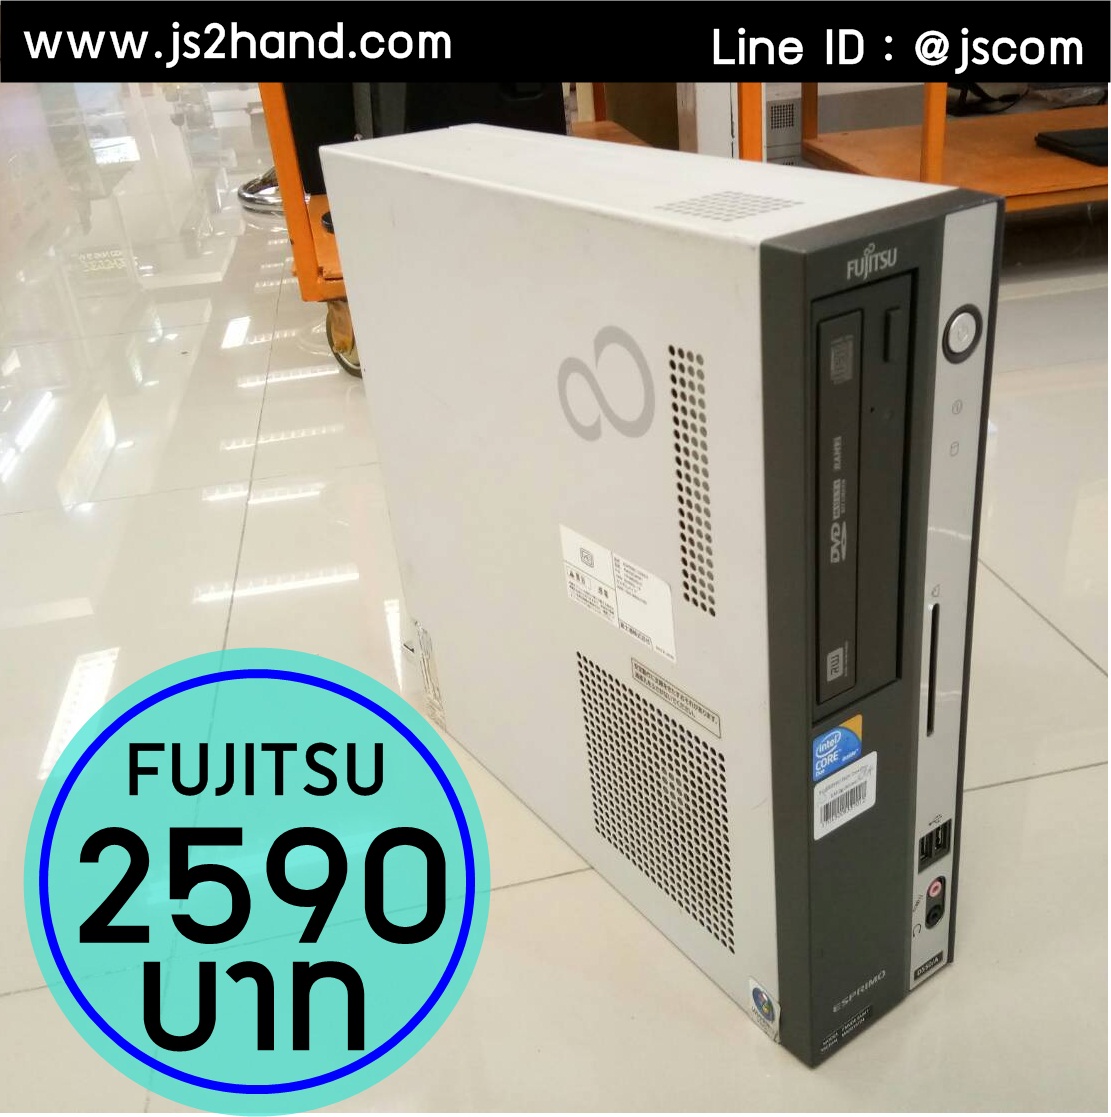 FUJITSU Core2Duo 2.93-3.06 GHz